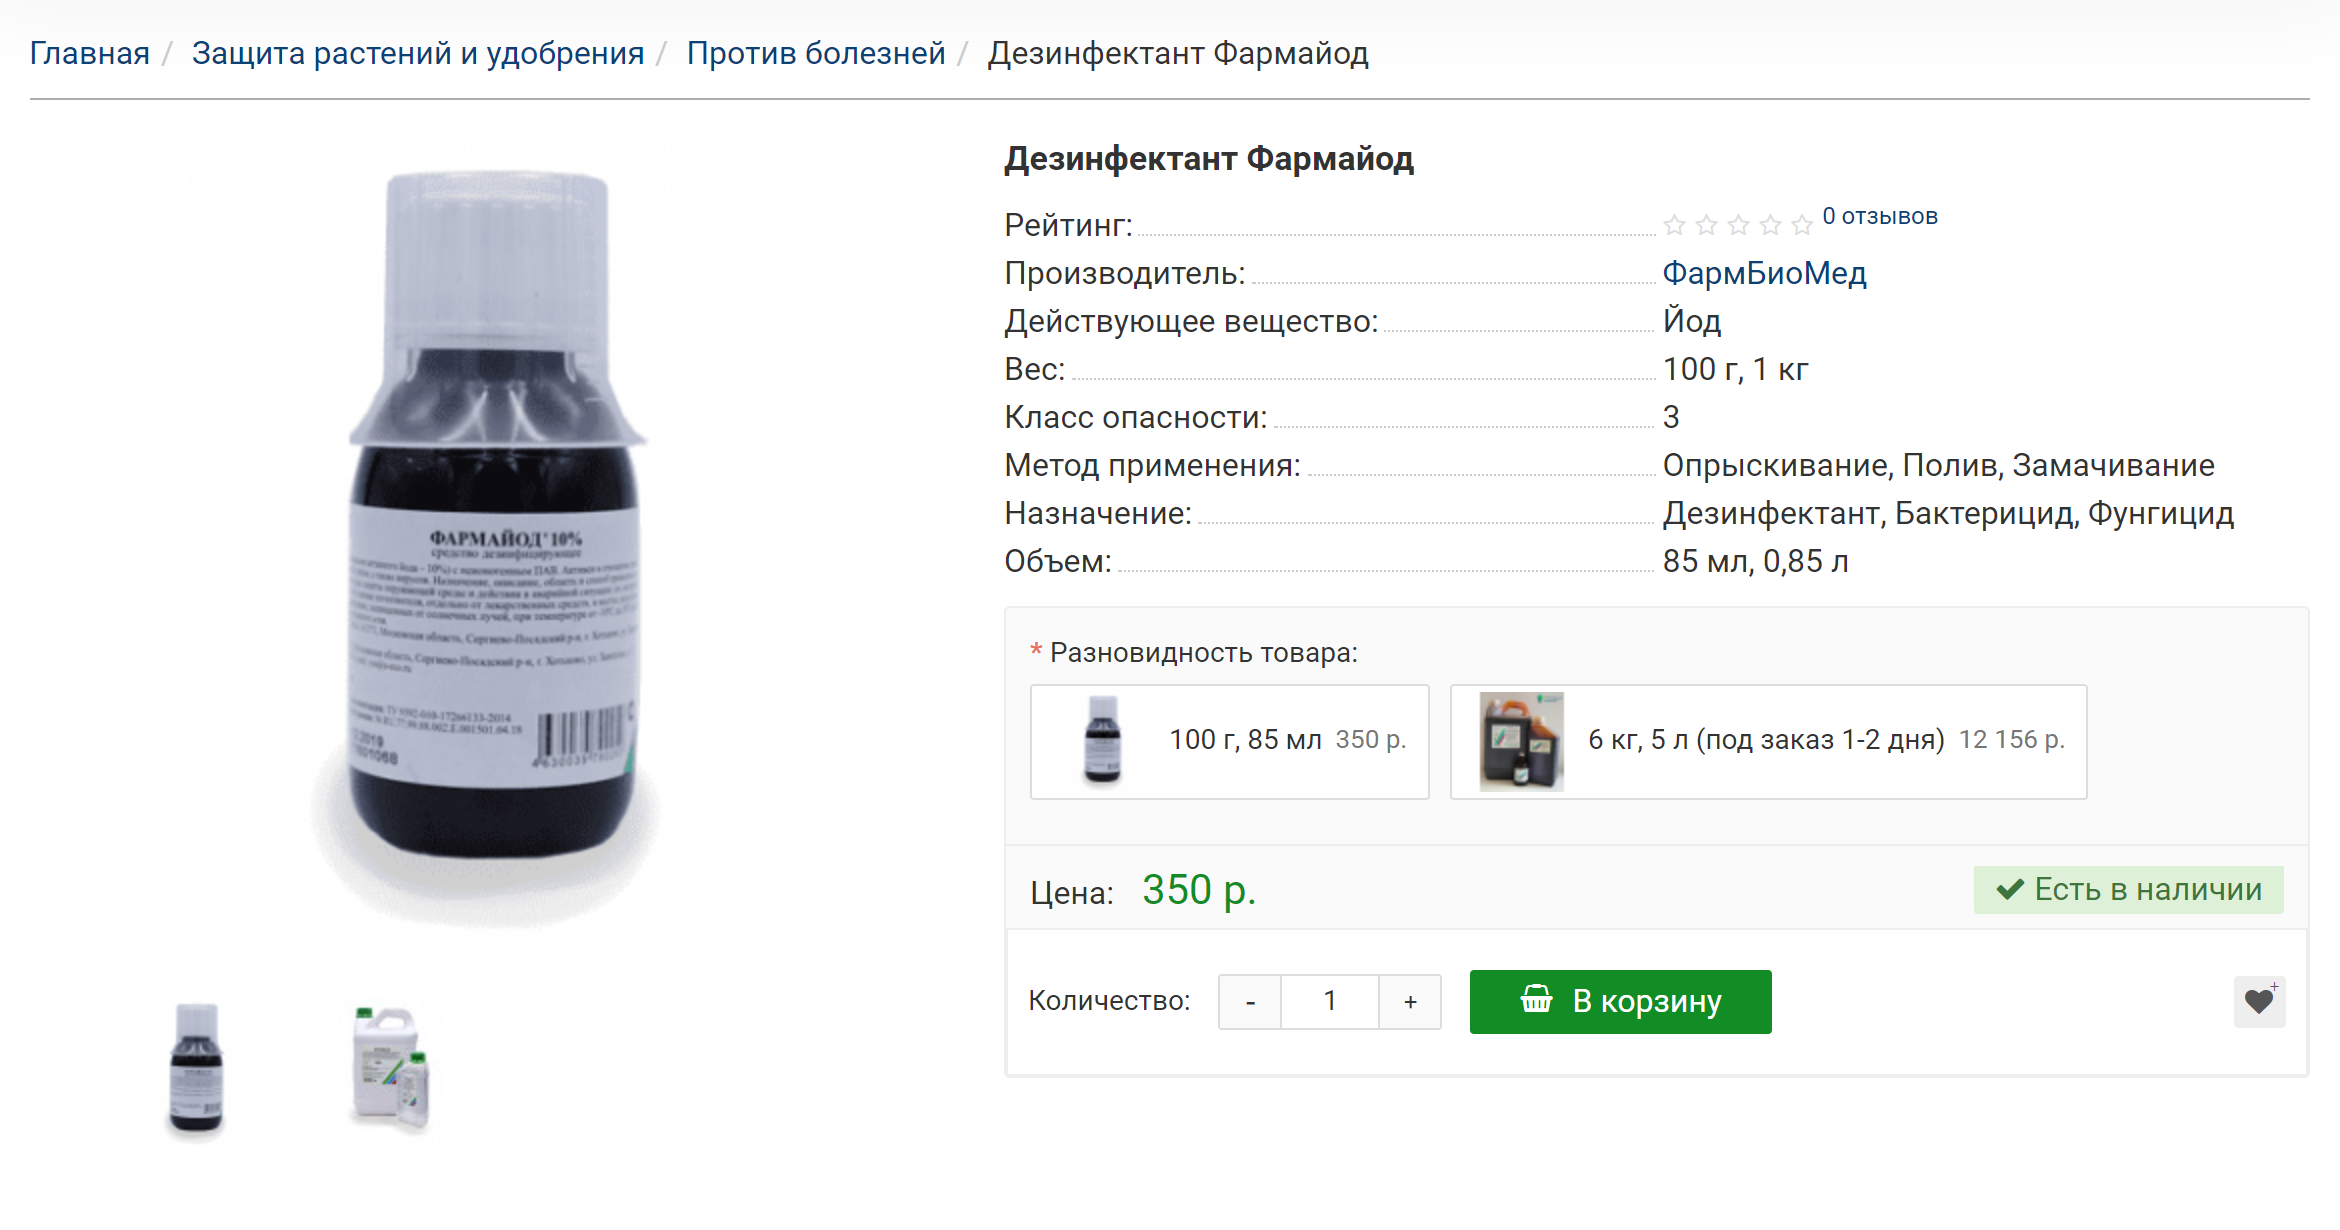 Препарат также применяют для дезинфекции теплиц и обработки складских помещений. Источник: yaeco.ru